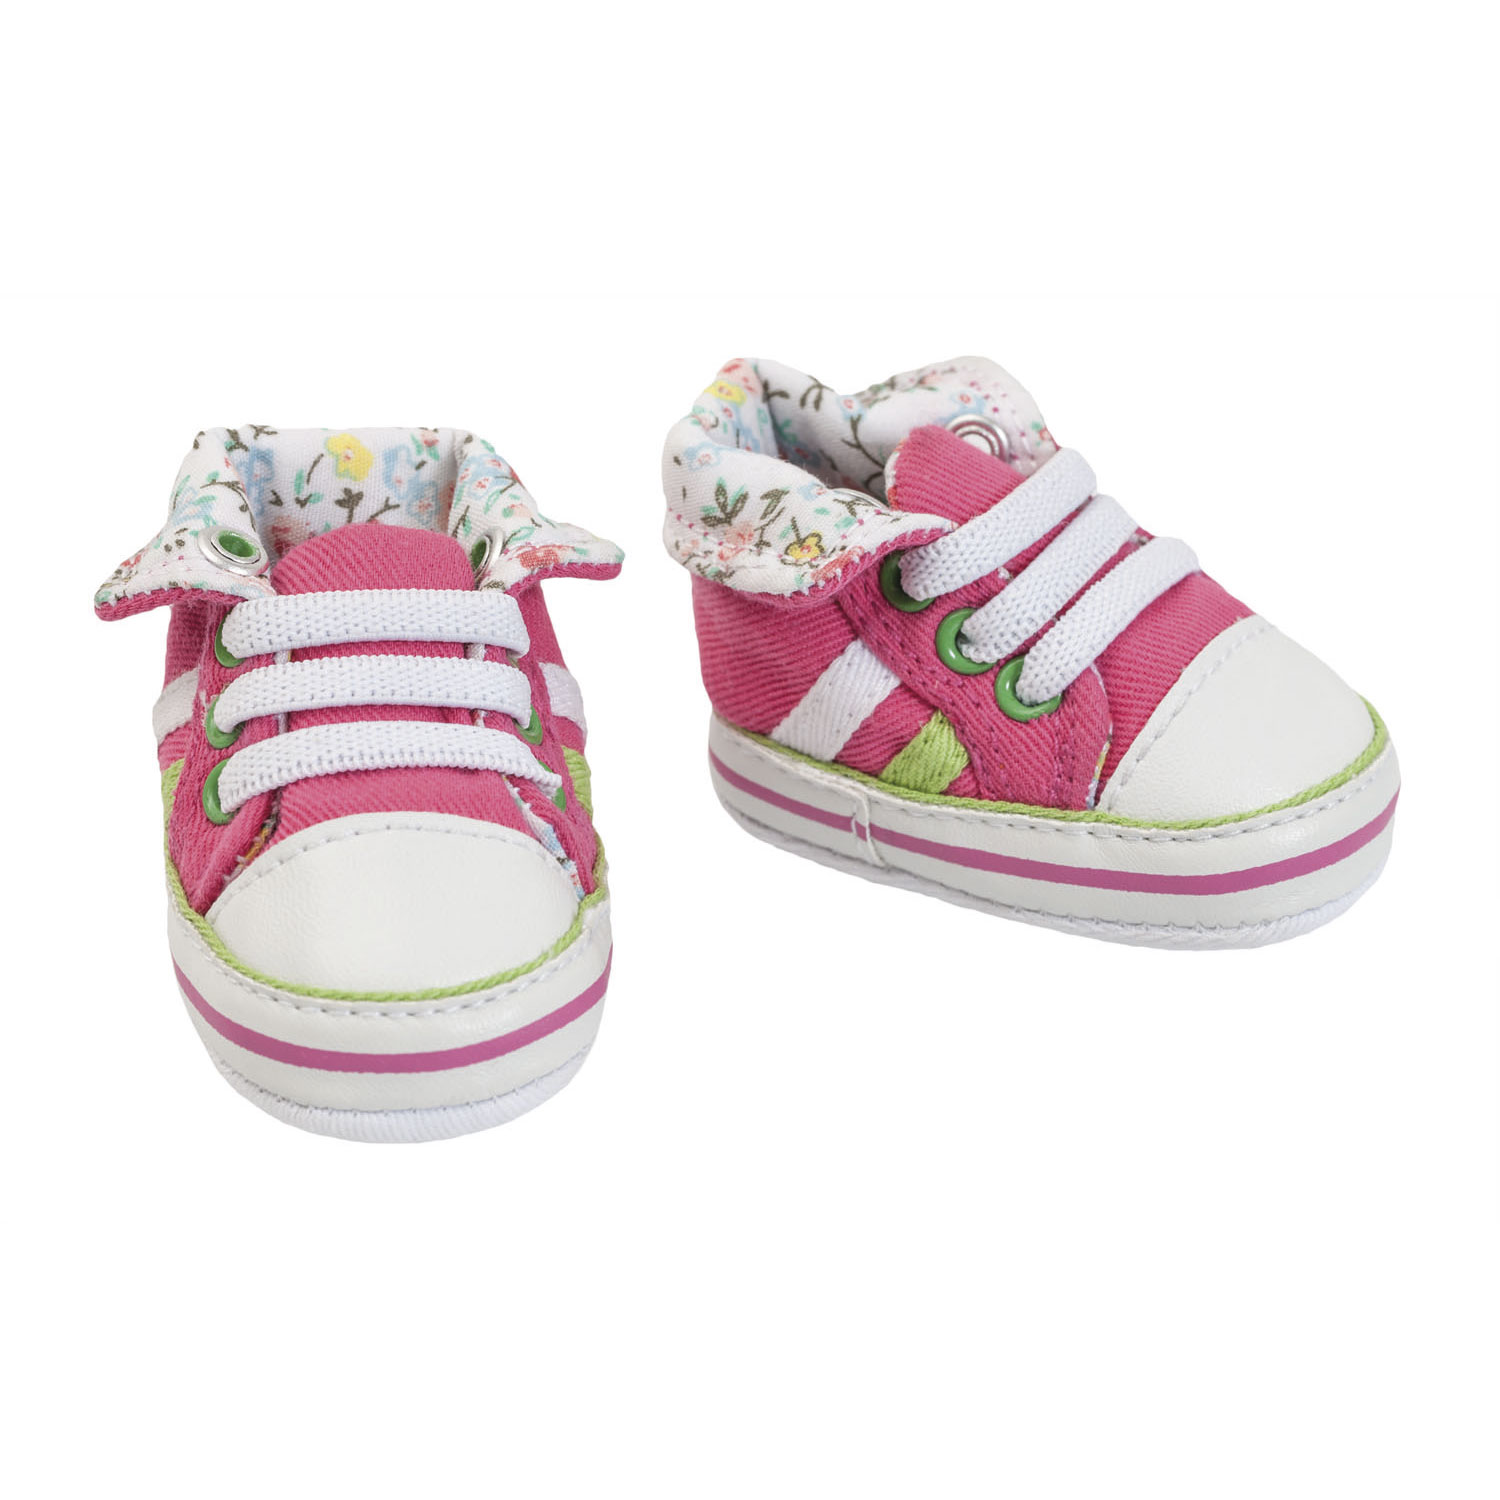 Chaussures de poupée, baskets roses, 30-34 cm